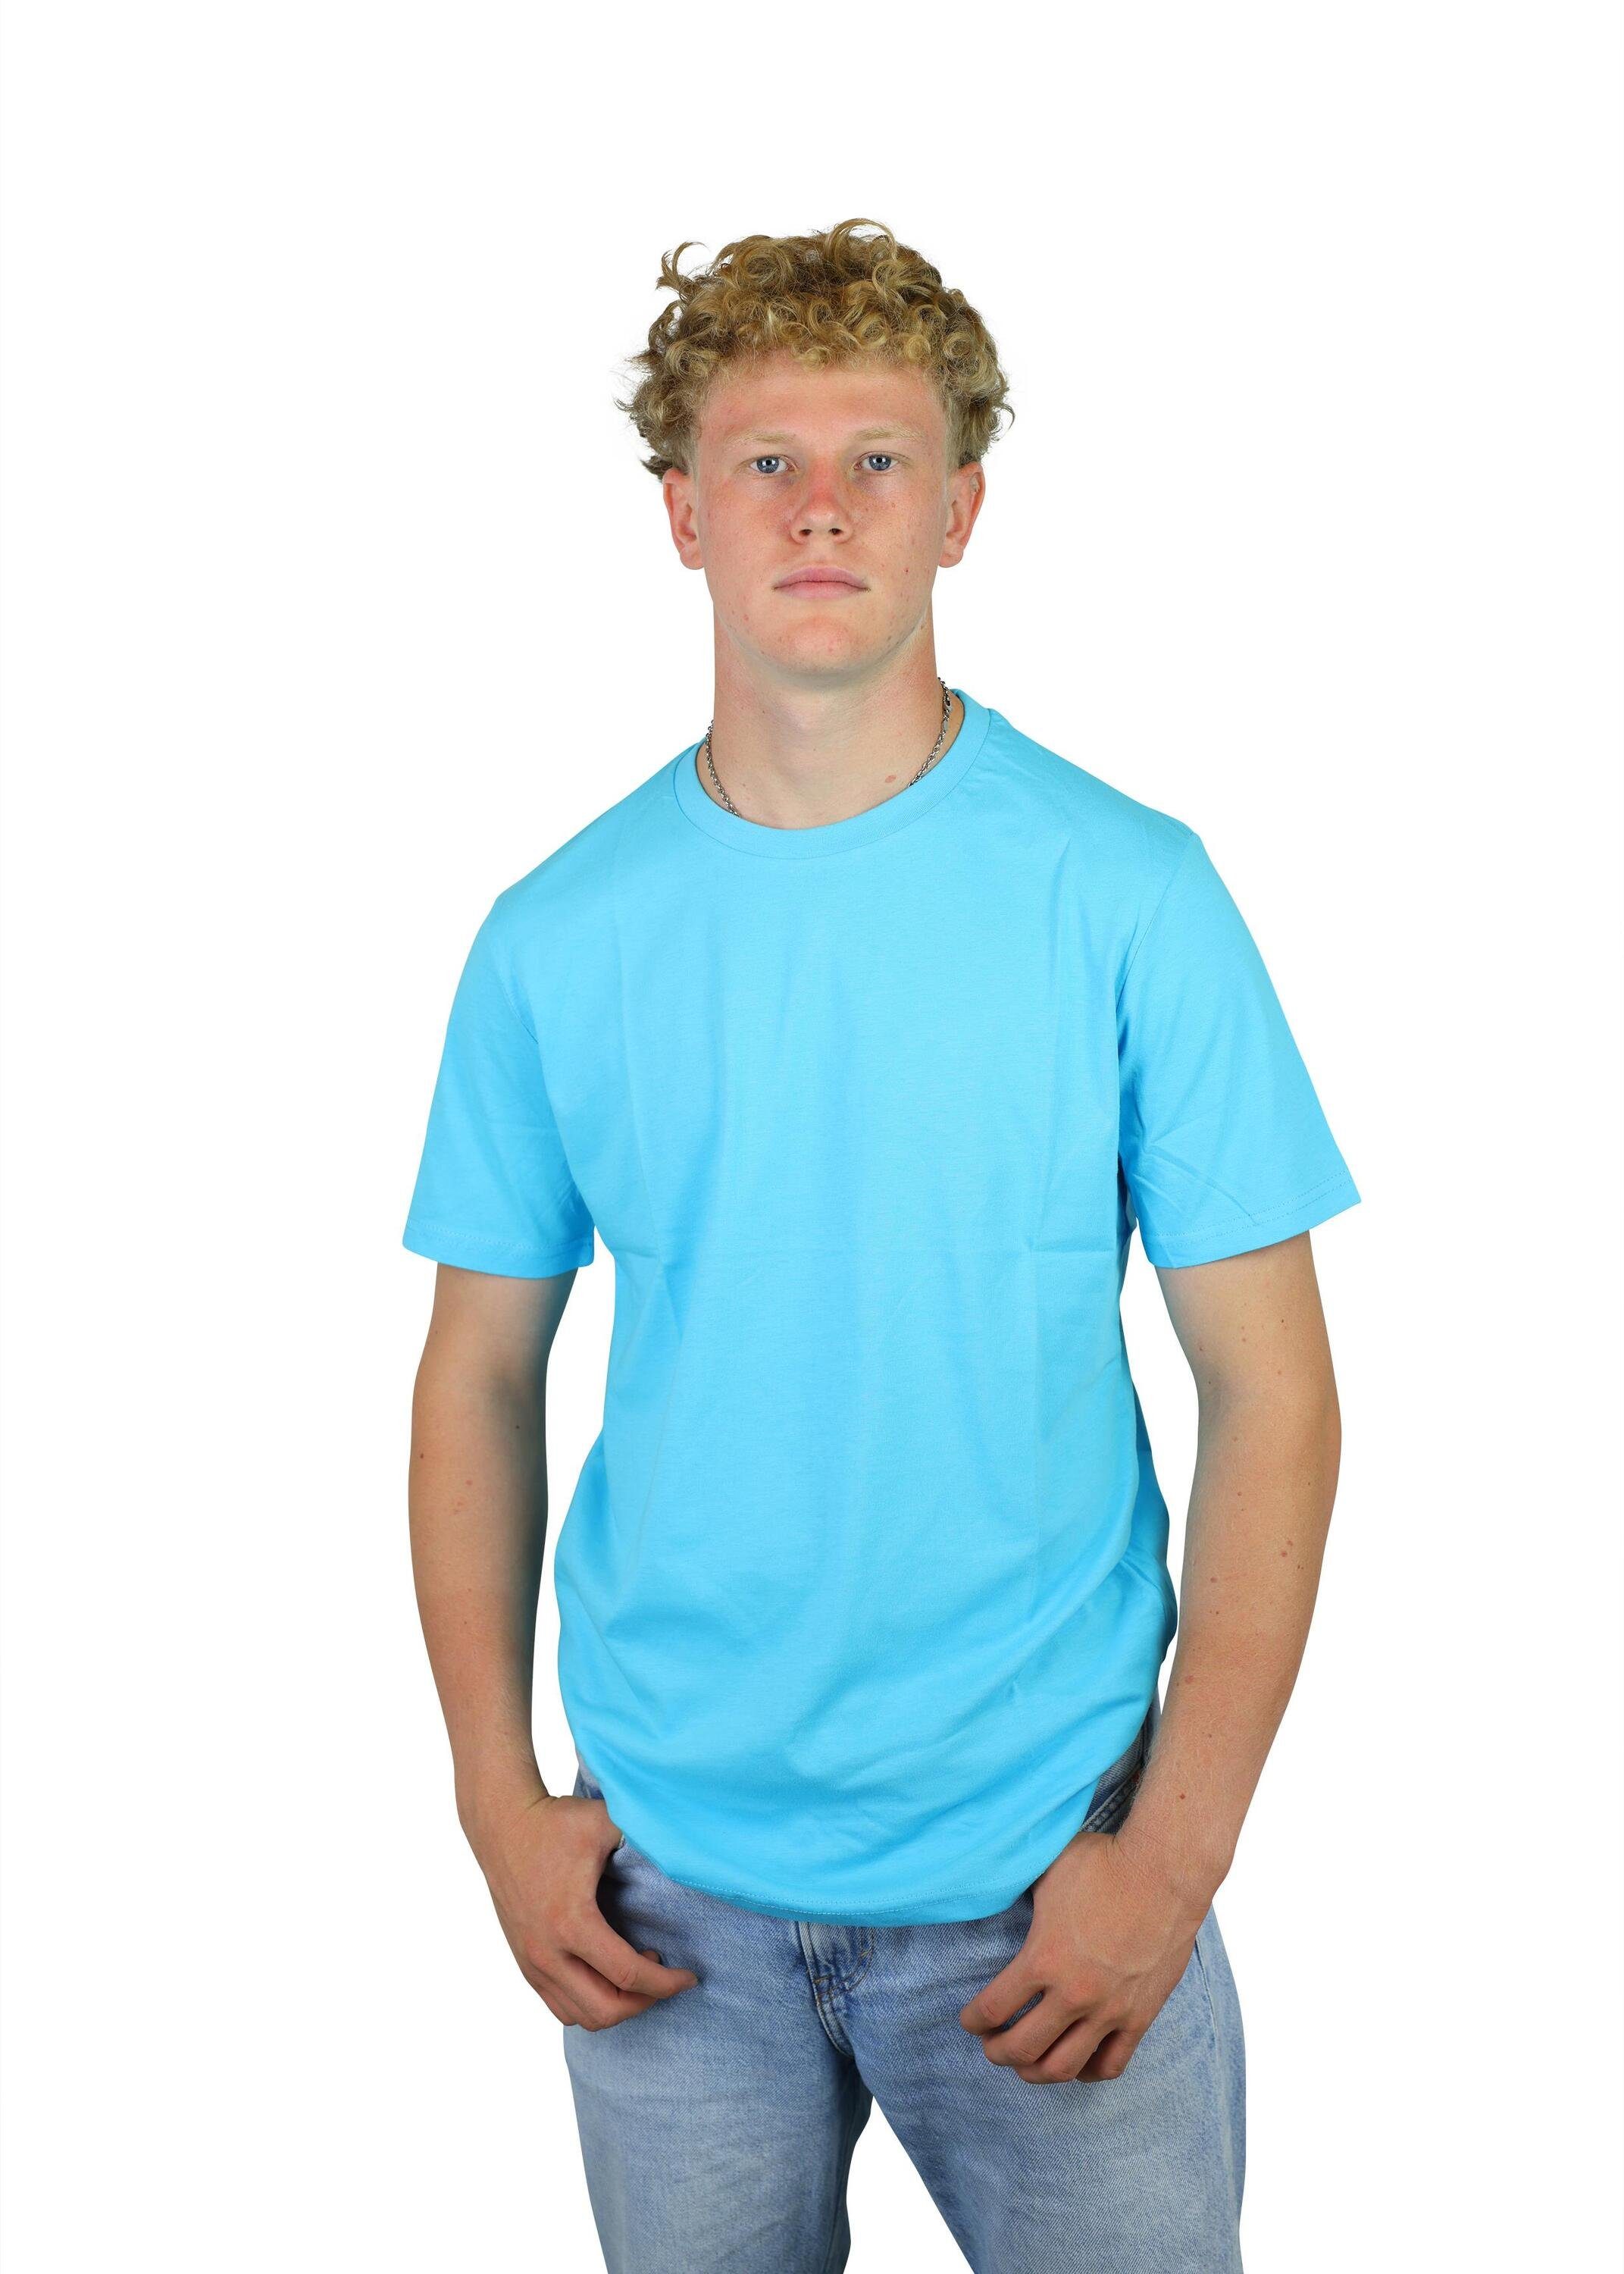 Jugend T-Shirt Blue aus Karl Kinder, Fußball, für Baumwolle, FuPer